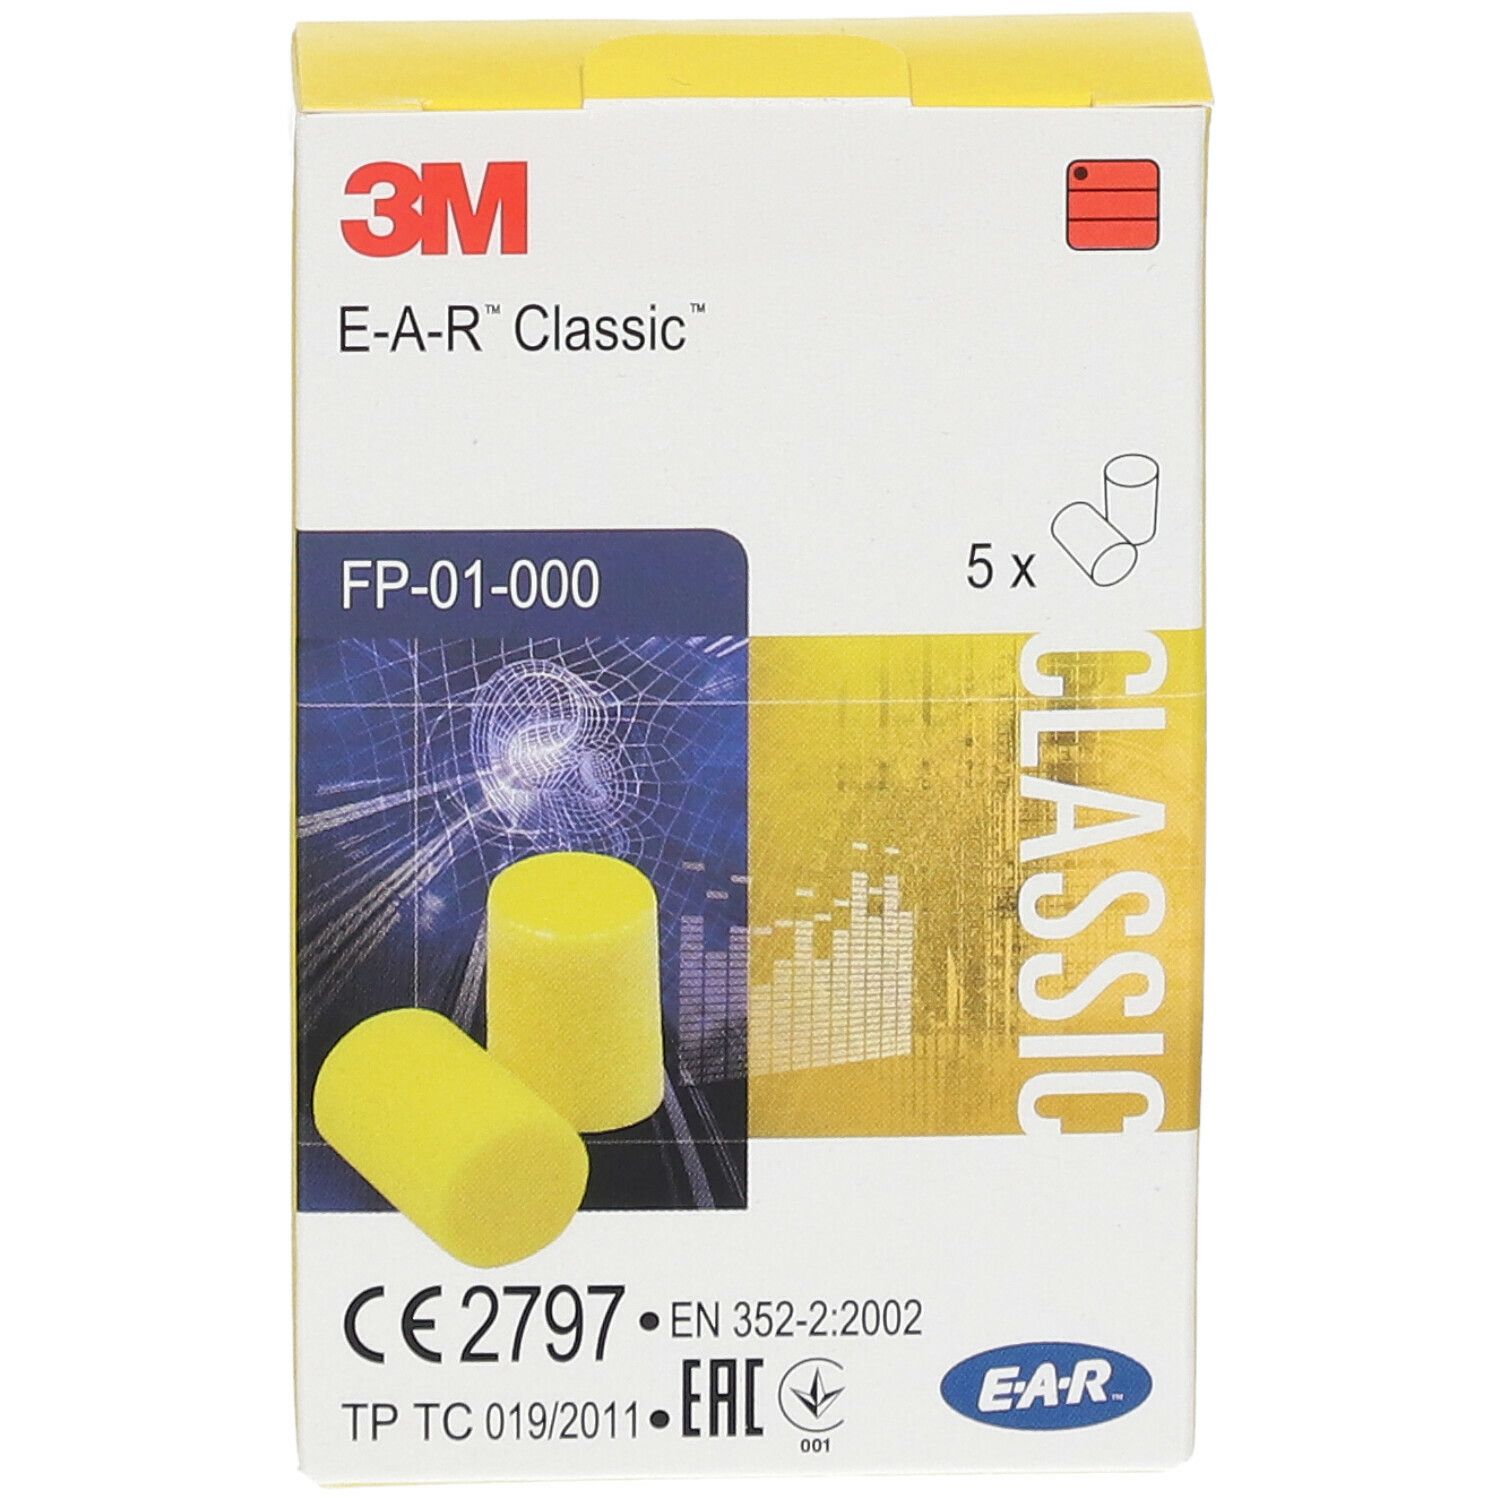 3M™ E-A-R™ Classic™ vorzuformende Gehörschutzstöpsel